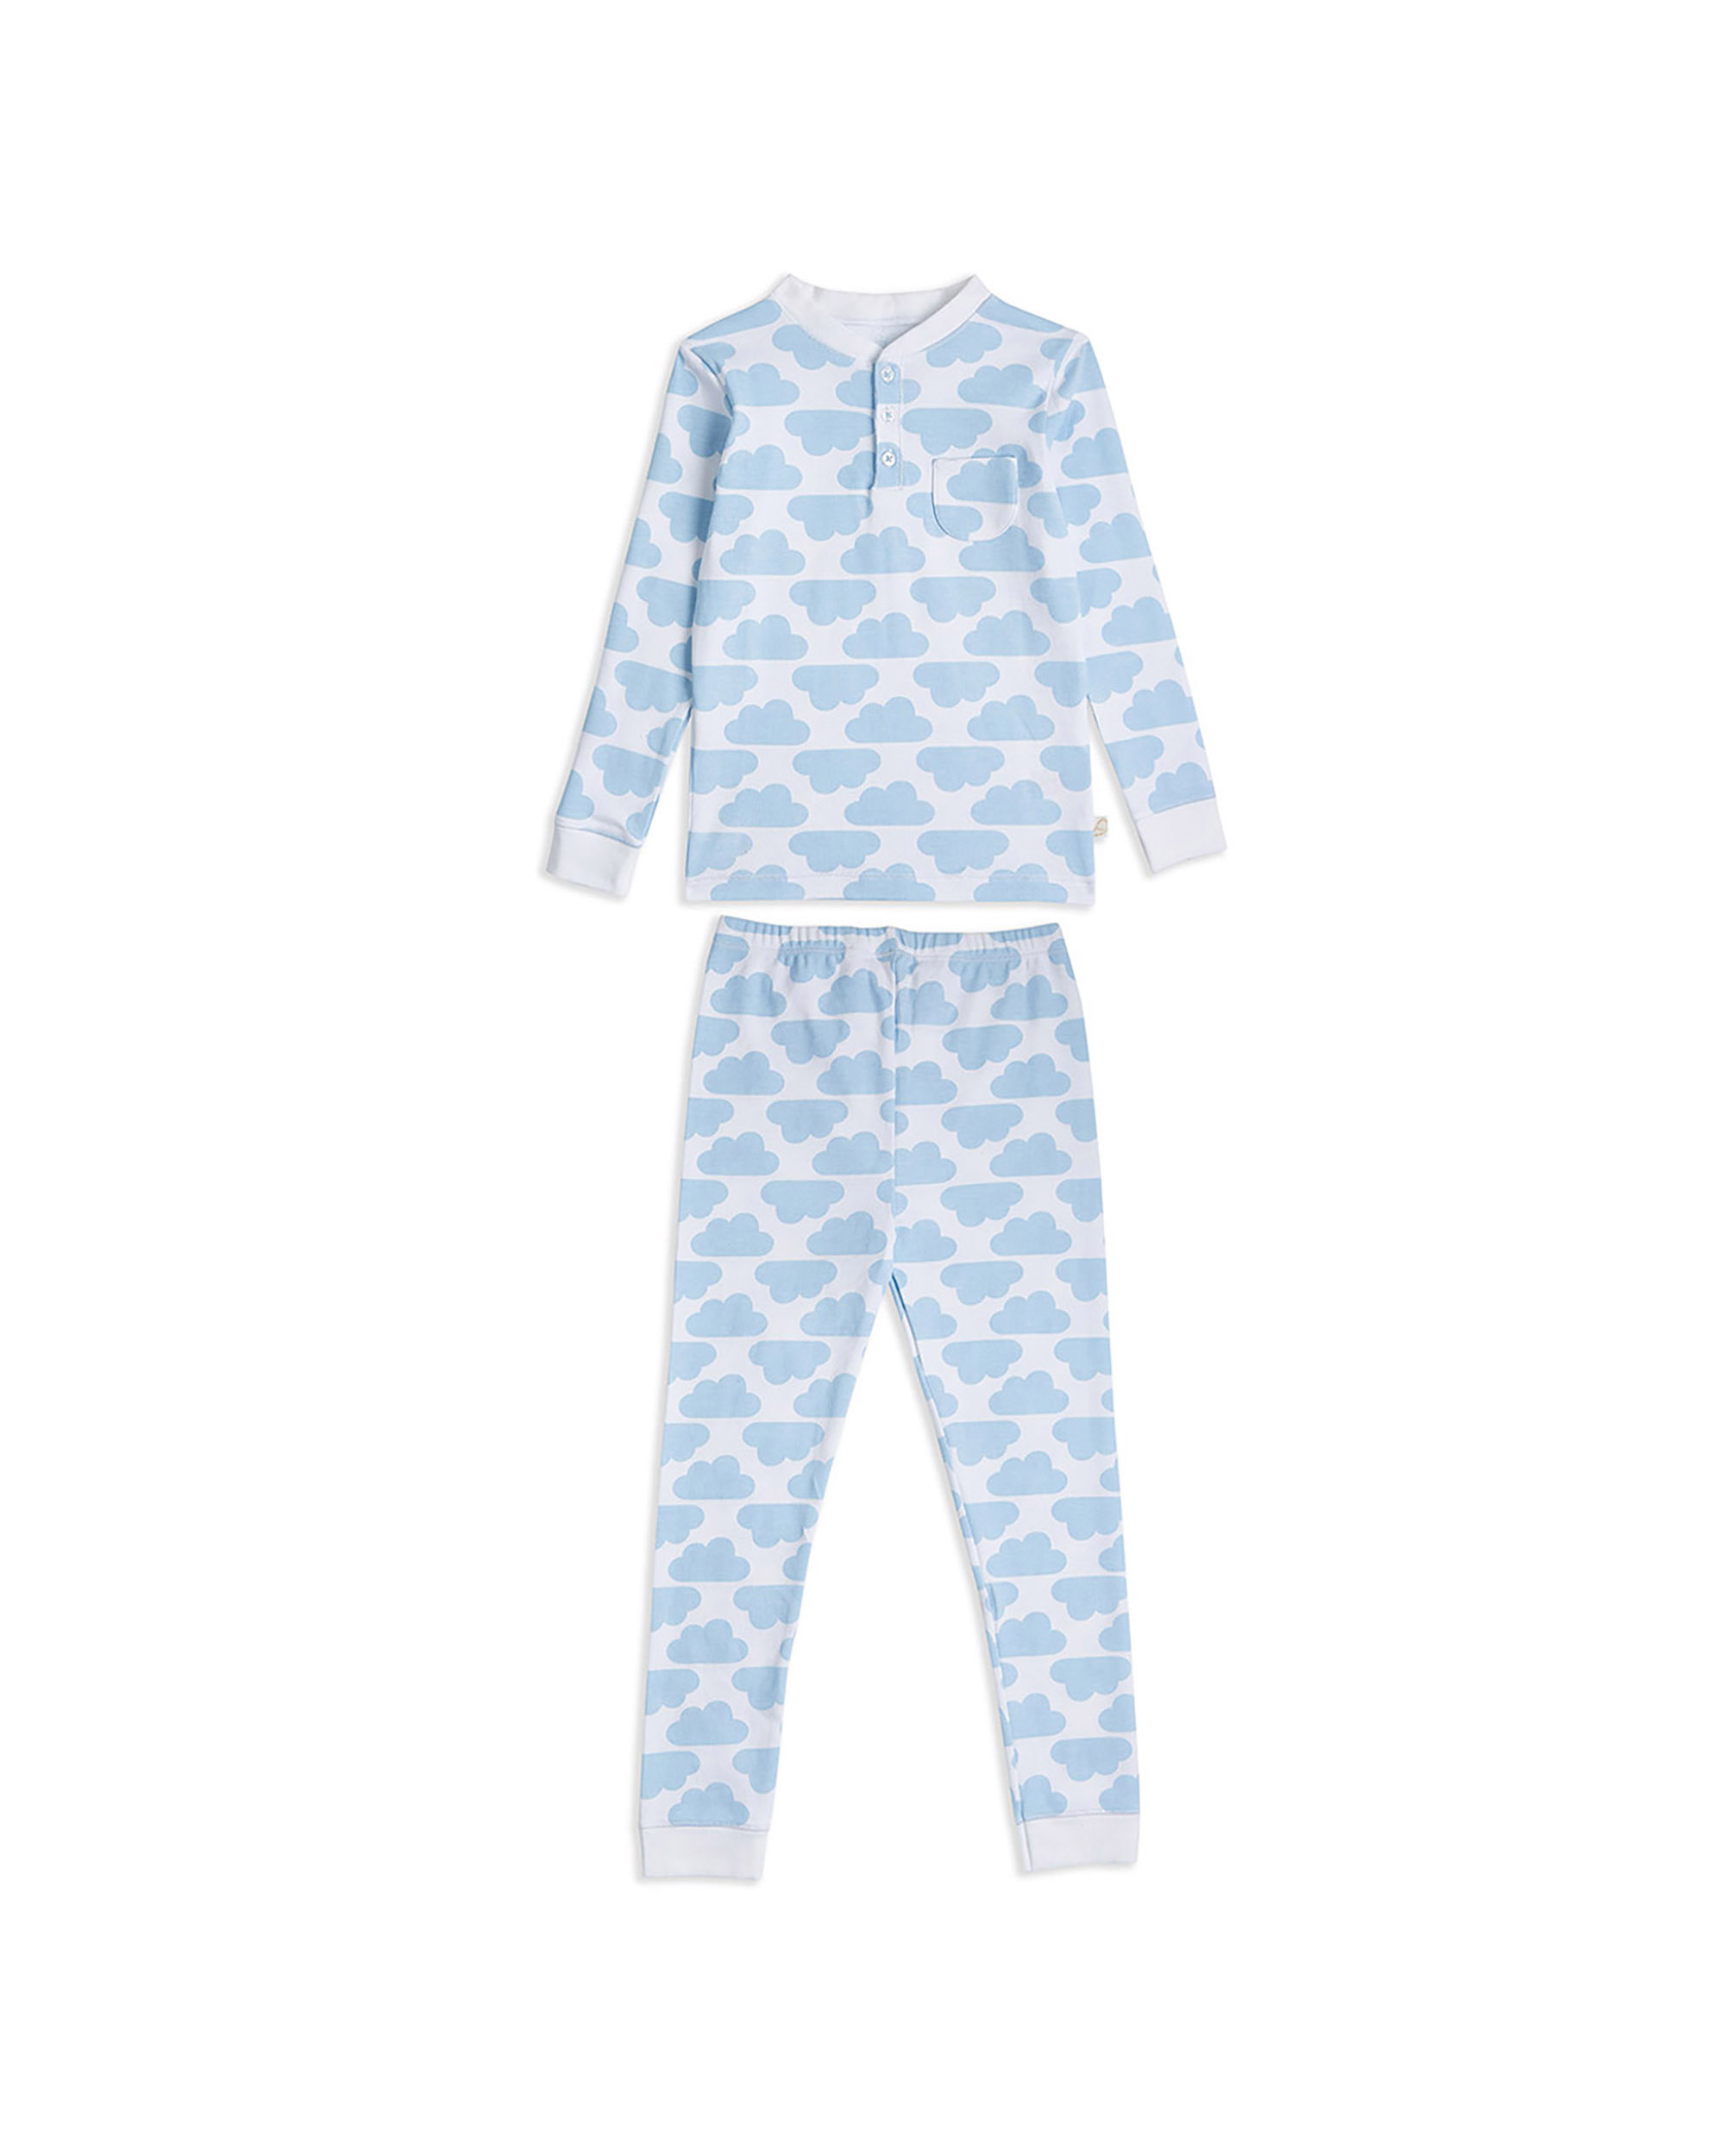 Pijama Franela – Light blue Rabbit – KinderWelt